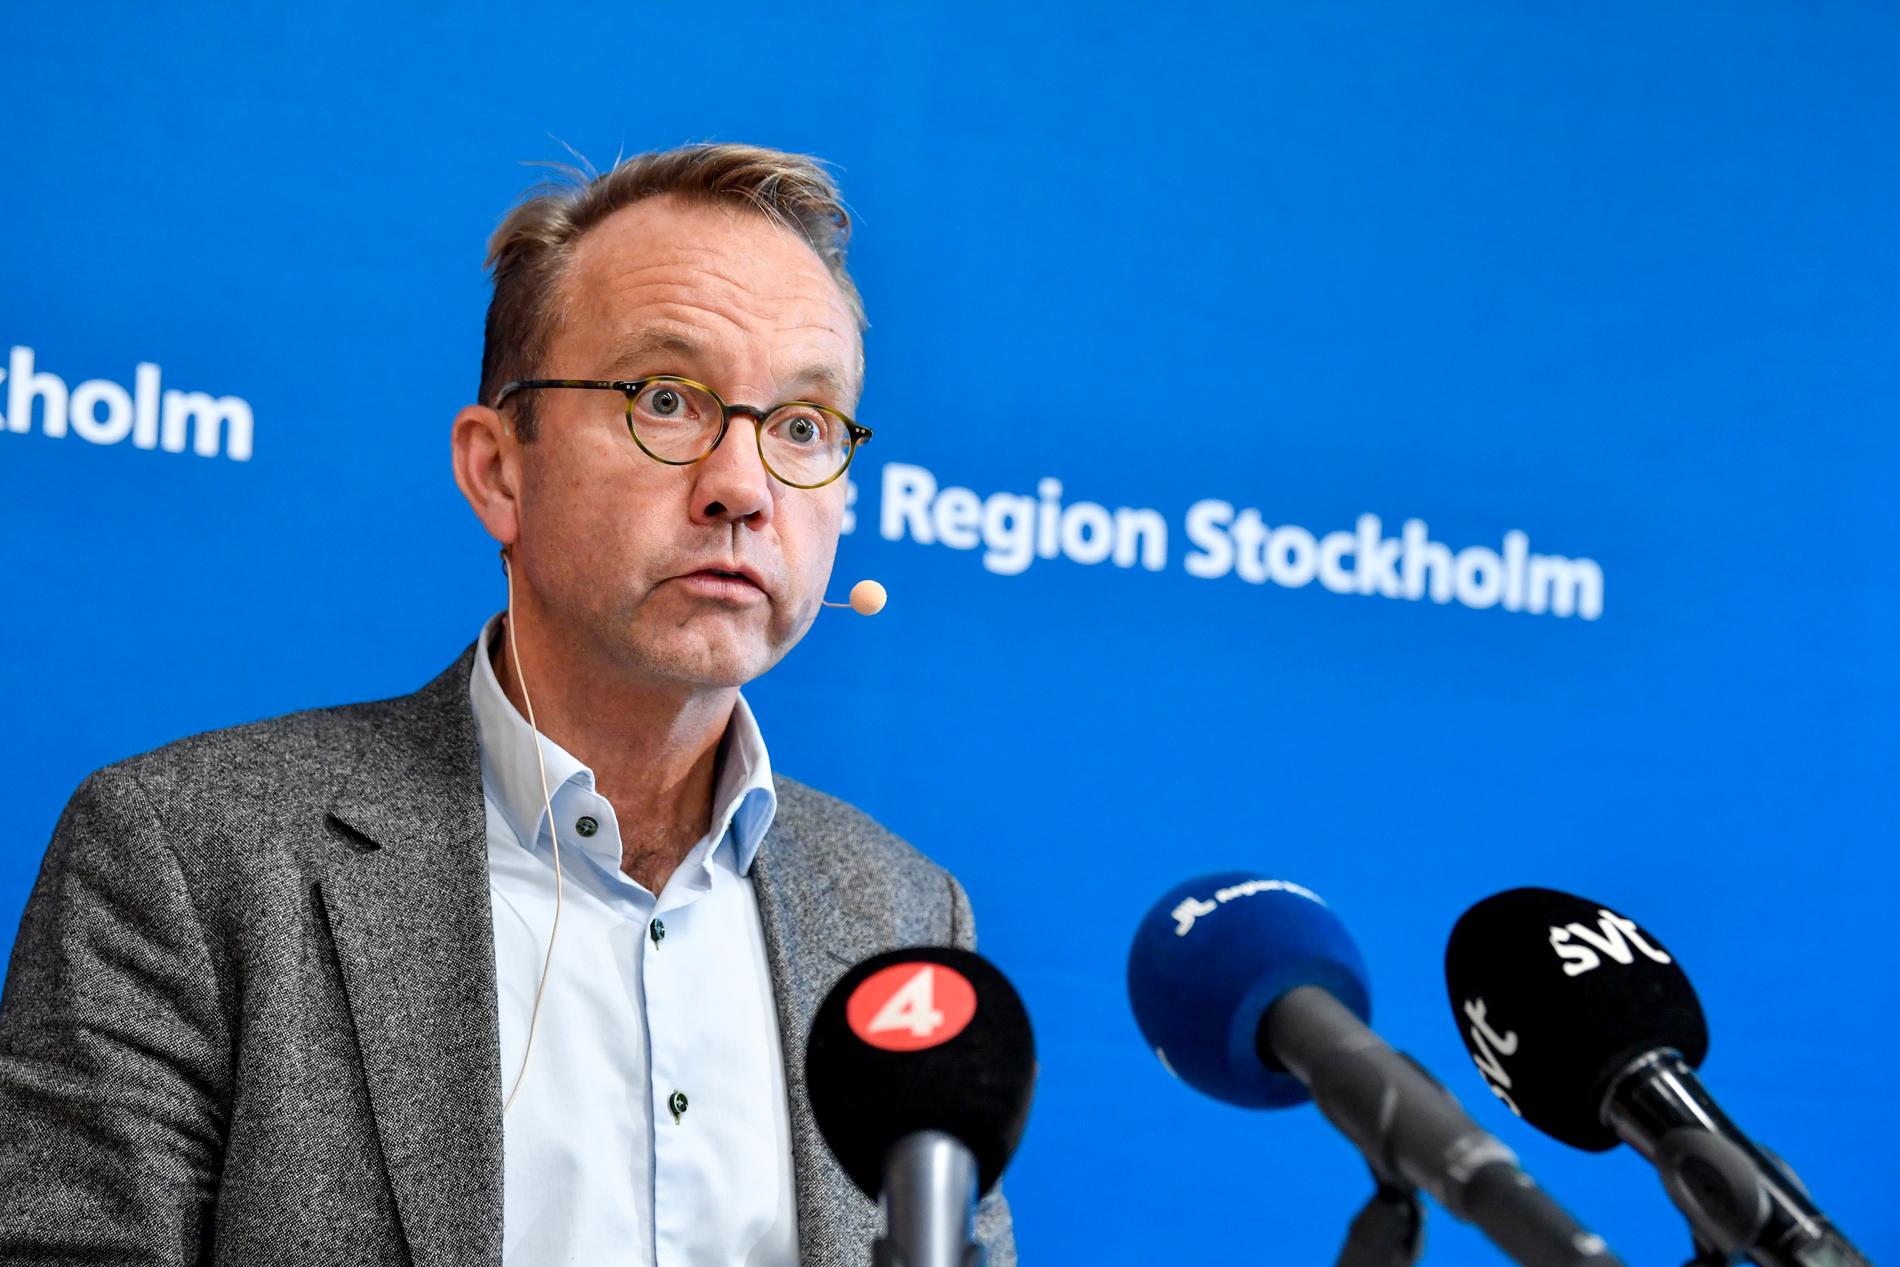 Hälso- och sjukvårdsdirektören Björn Eriksson har slagit larm.